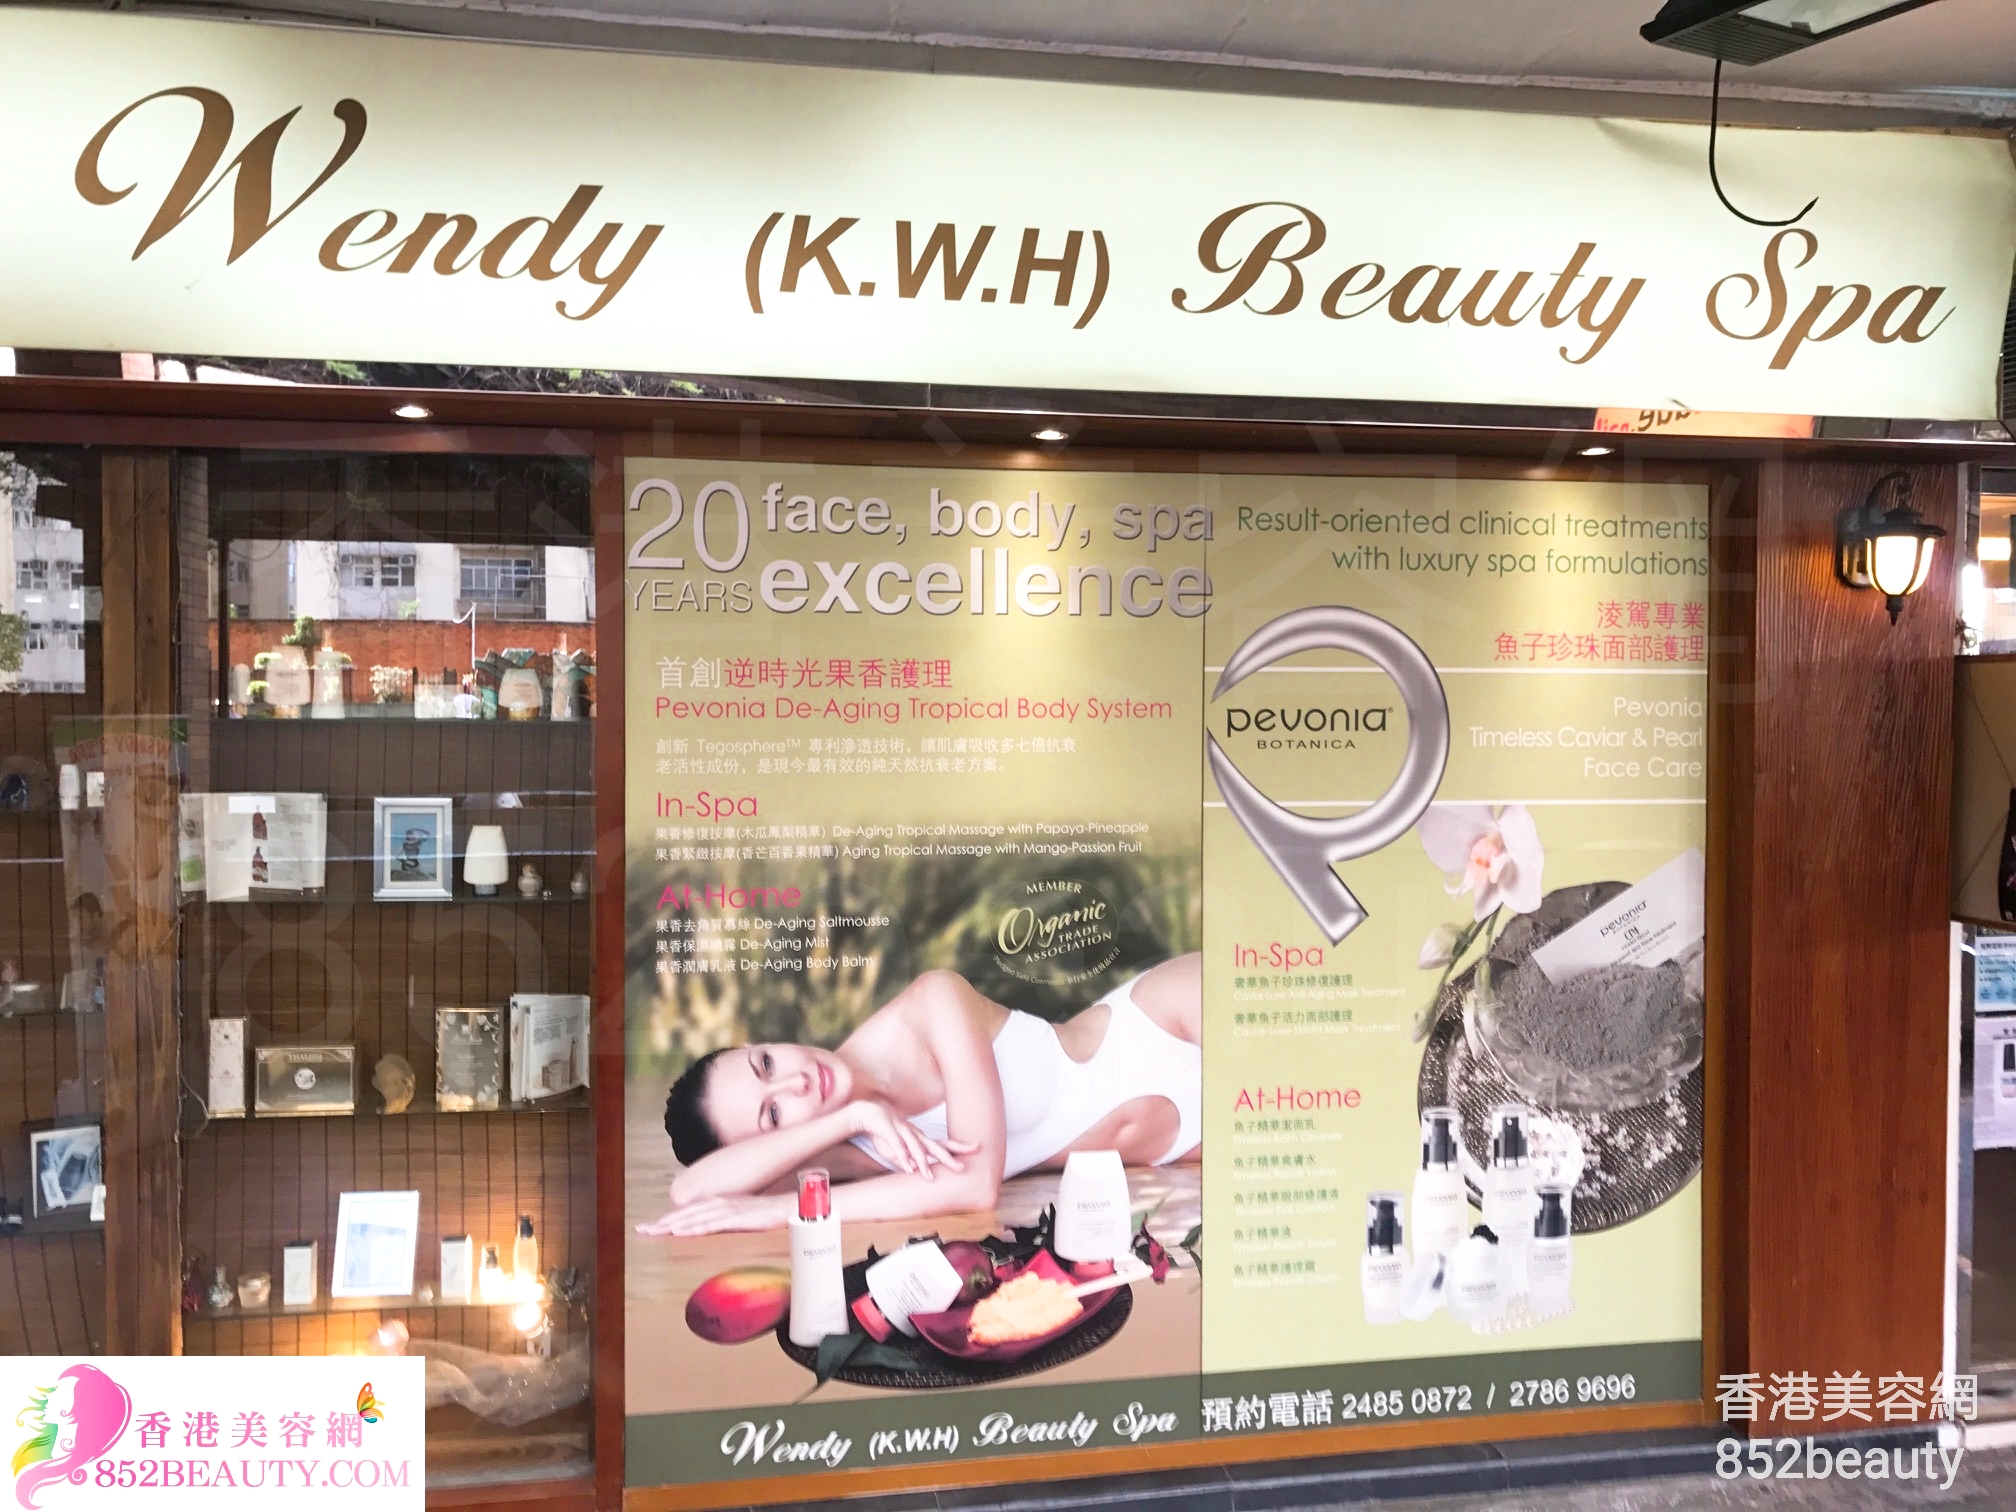 按摩/SPA: Wendy (K.W.H) Beauty Spa